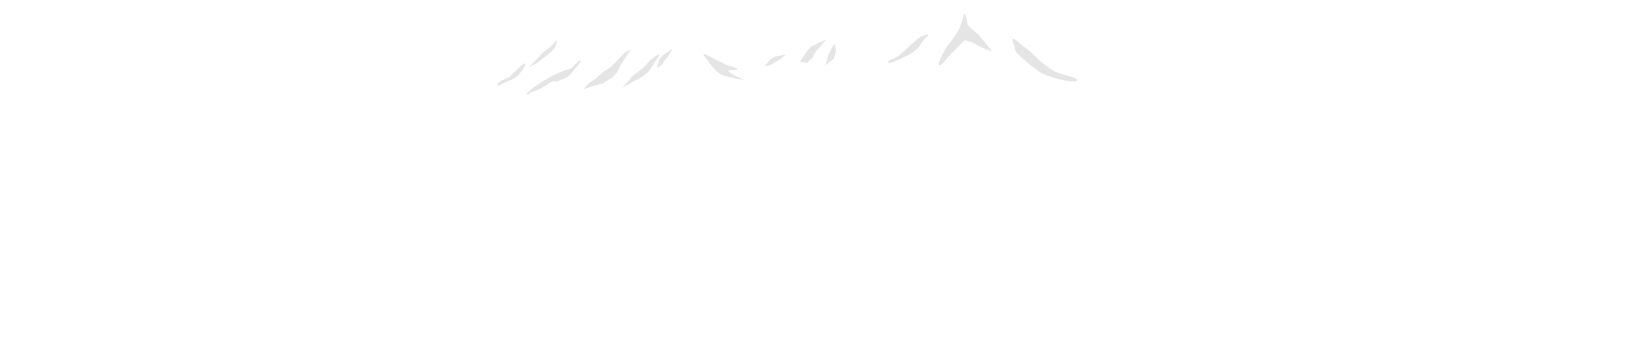 大雪山のイラスト